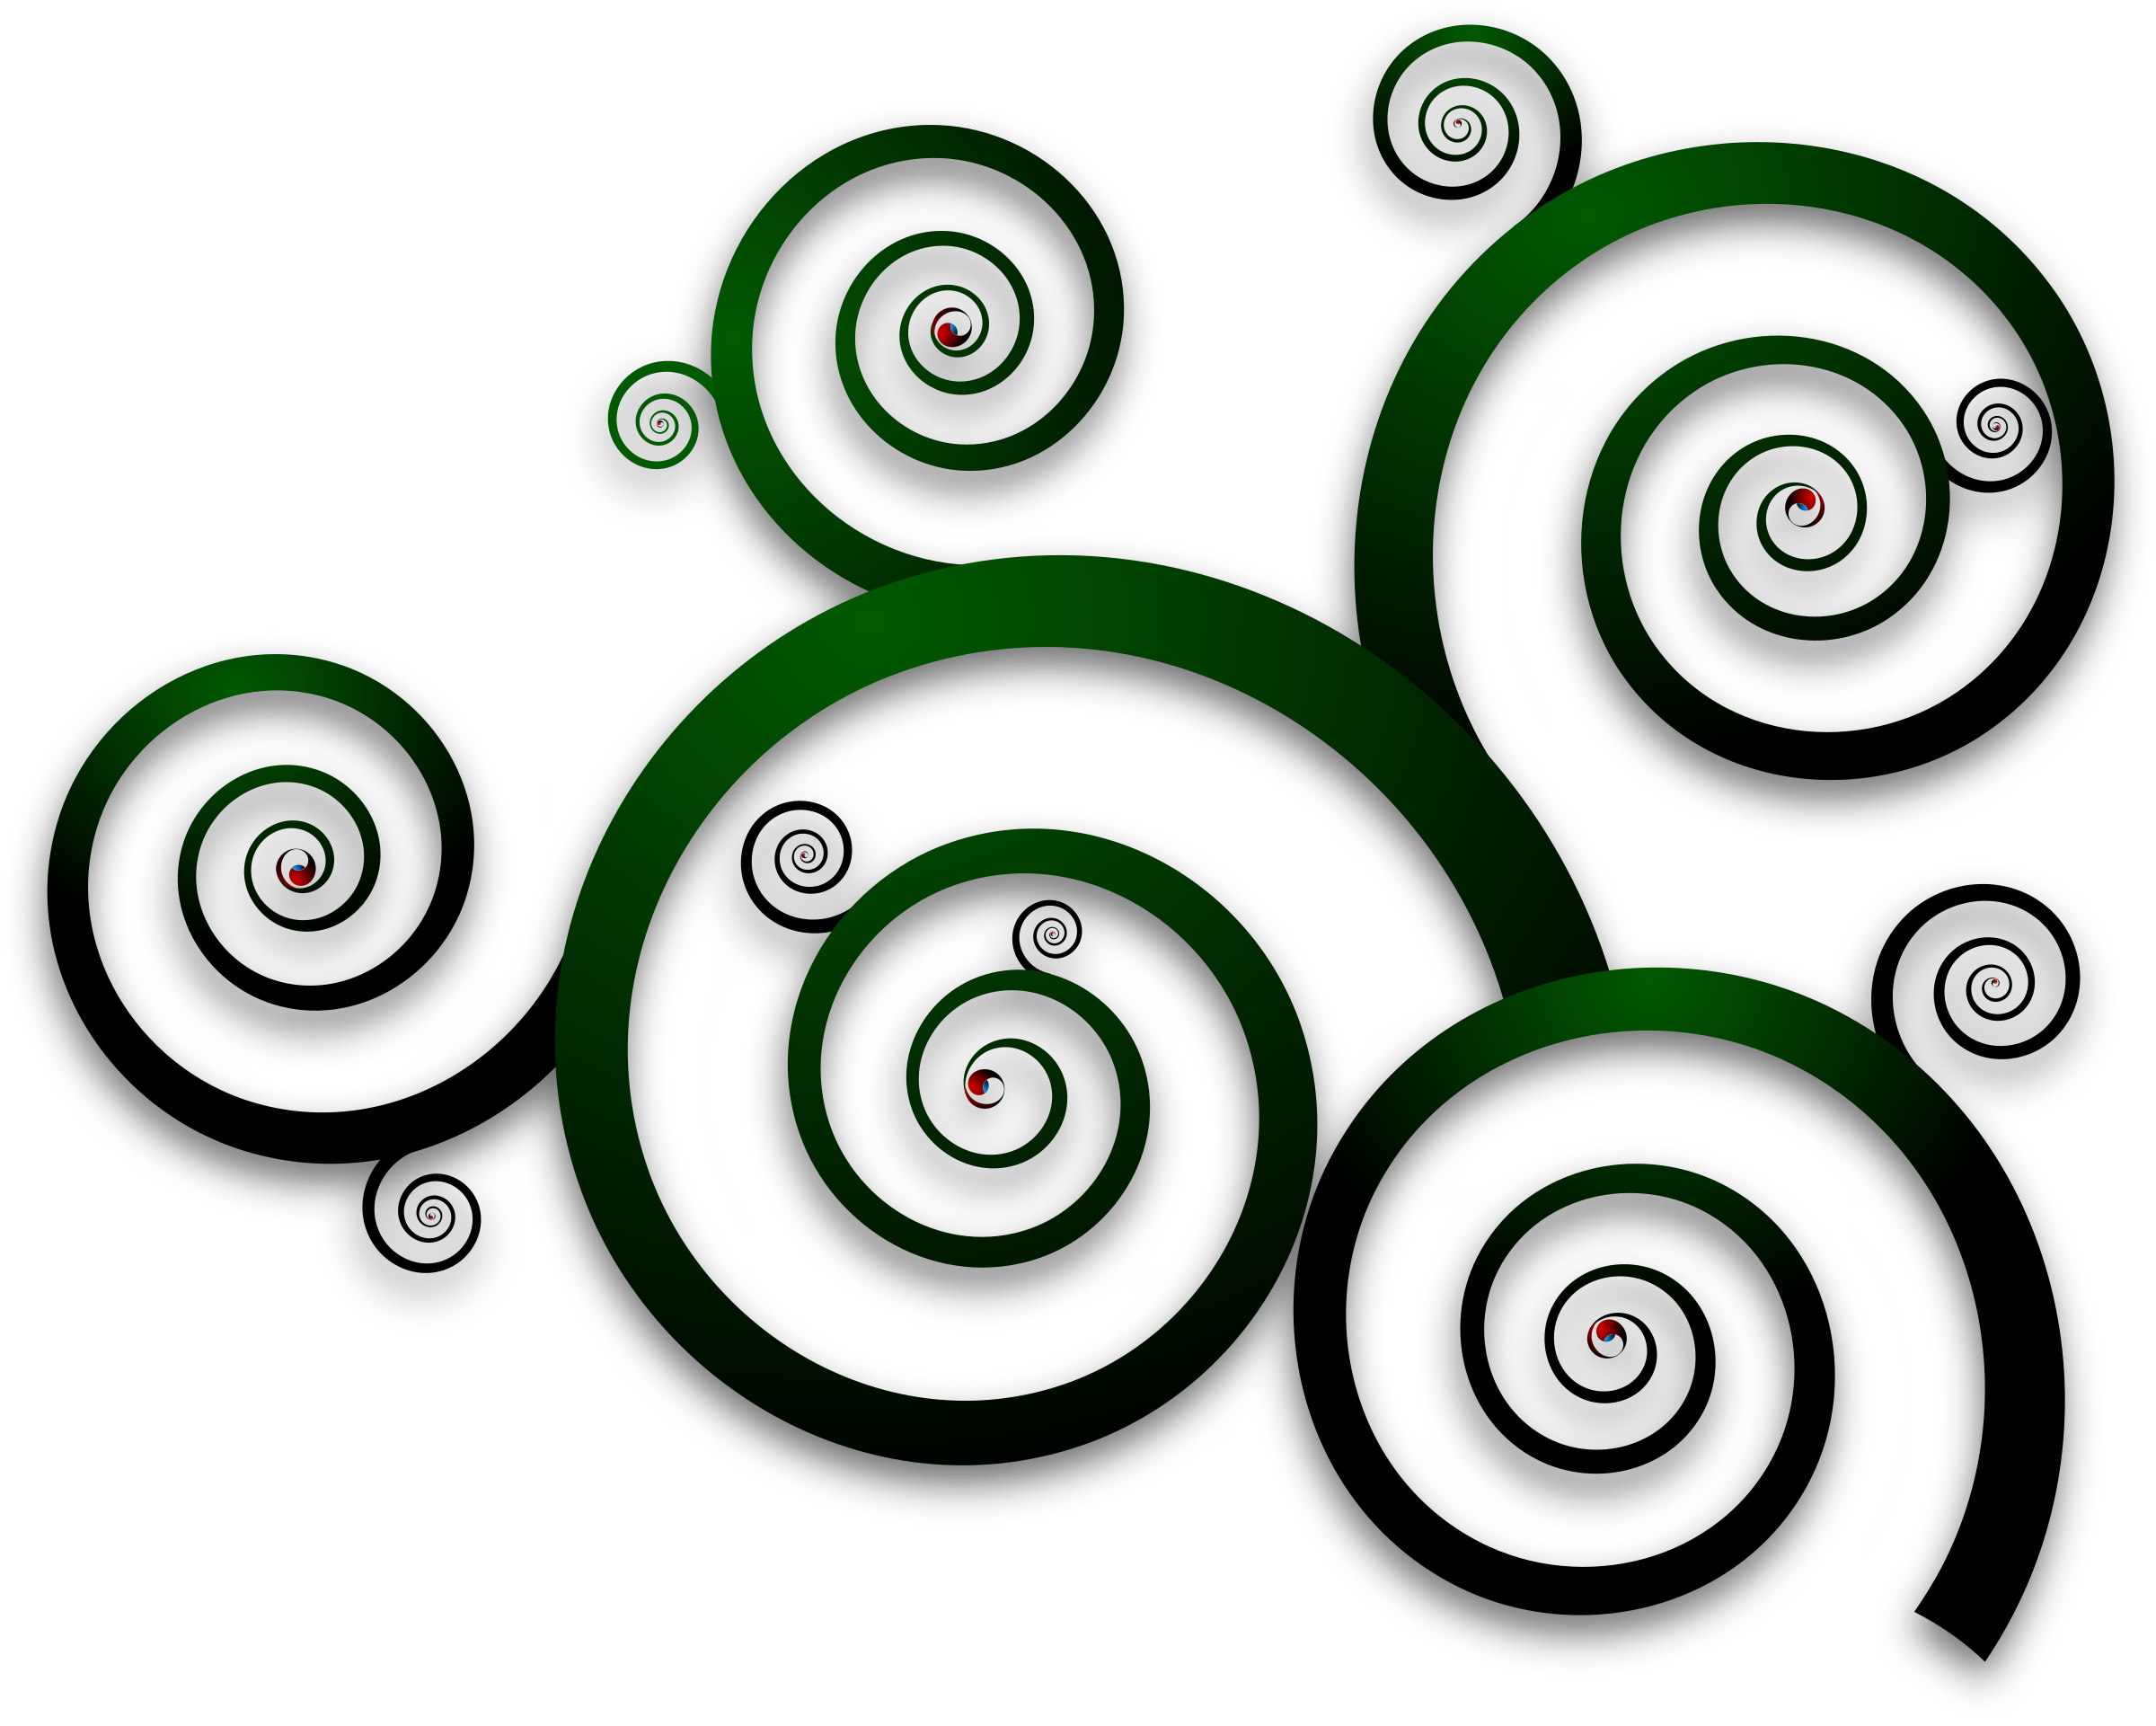 Green Spirals On A Black Background